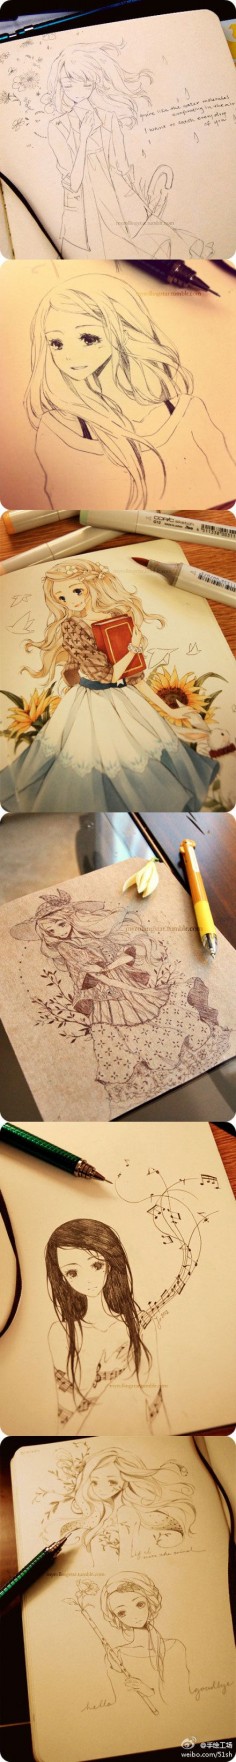 ✮ ANIME ART ✮ anime girls. . .drawing. . .doodle. . .work in progress. . .pen. . .marker. . .cute. . .kawaii